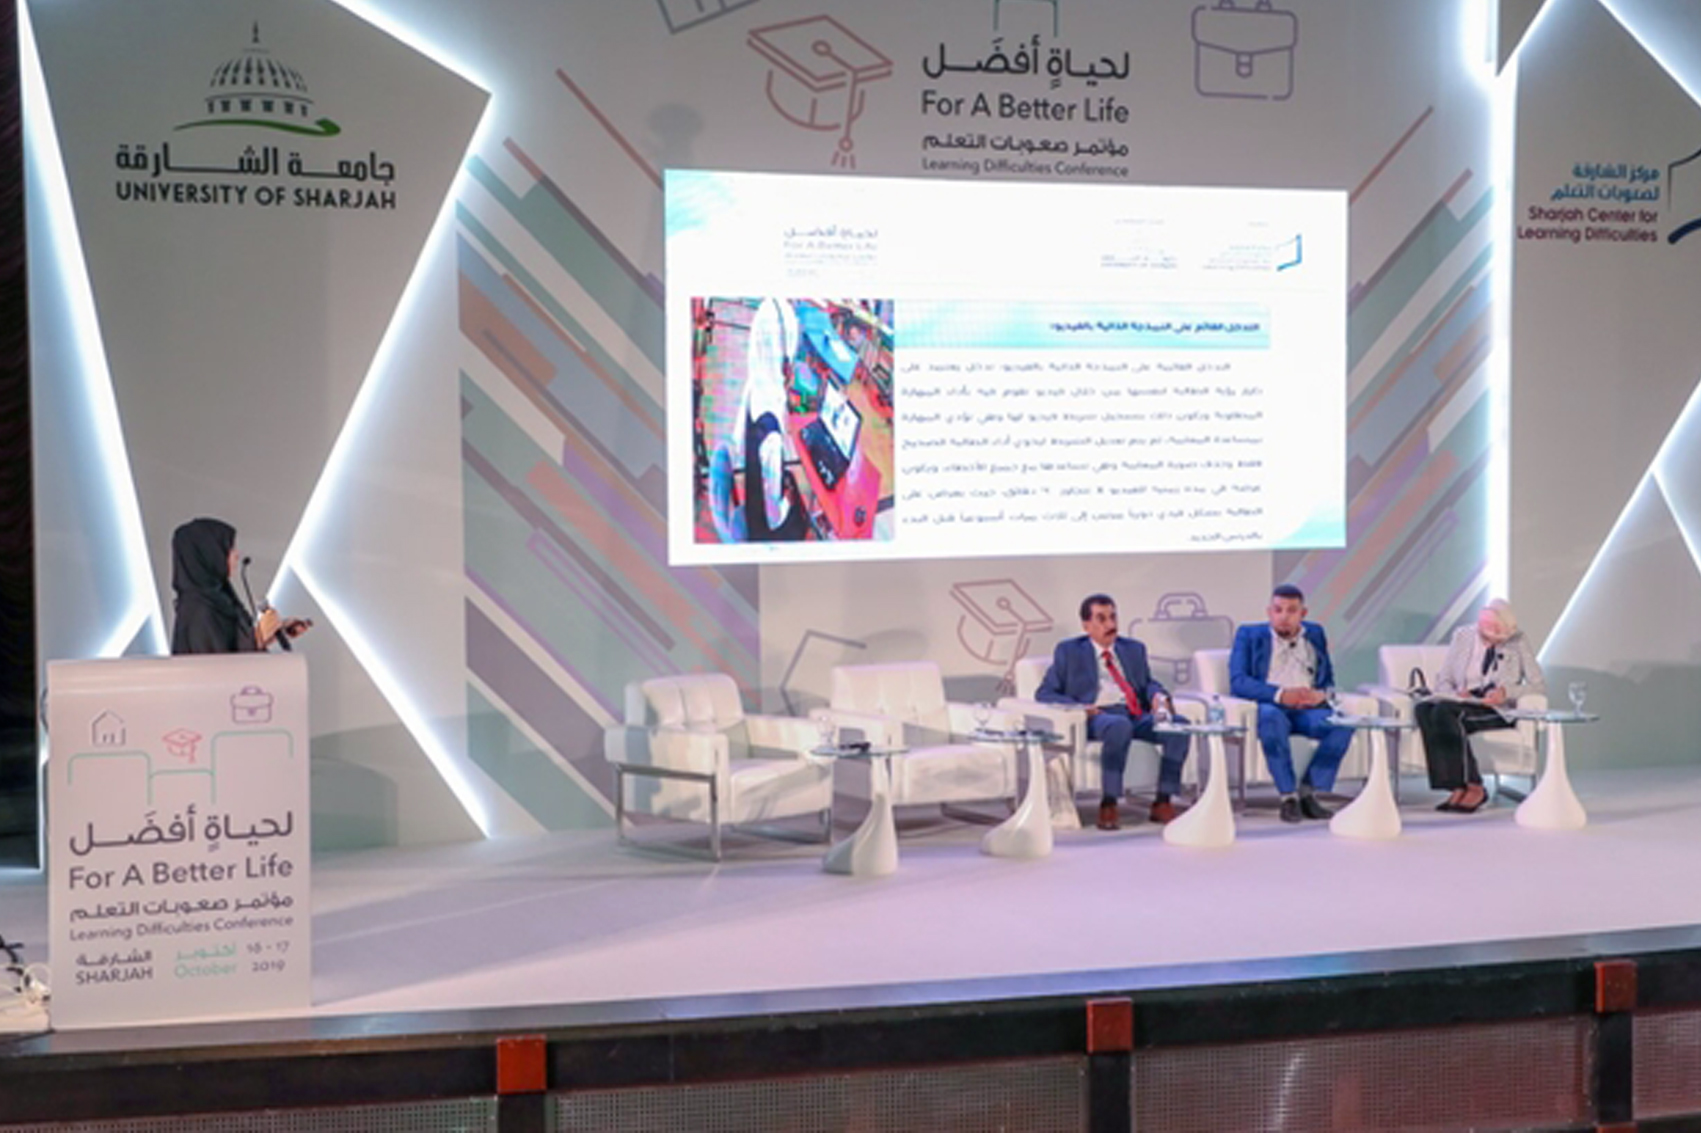 الشيخ سالم القاسمي يفتتحُ مؤتمرَ الشارقة لصعوبات التعلم (لحياة أفضل)